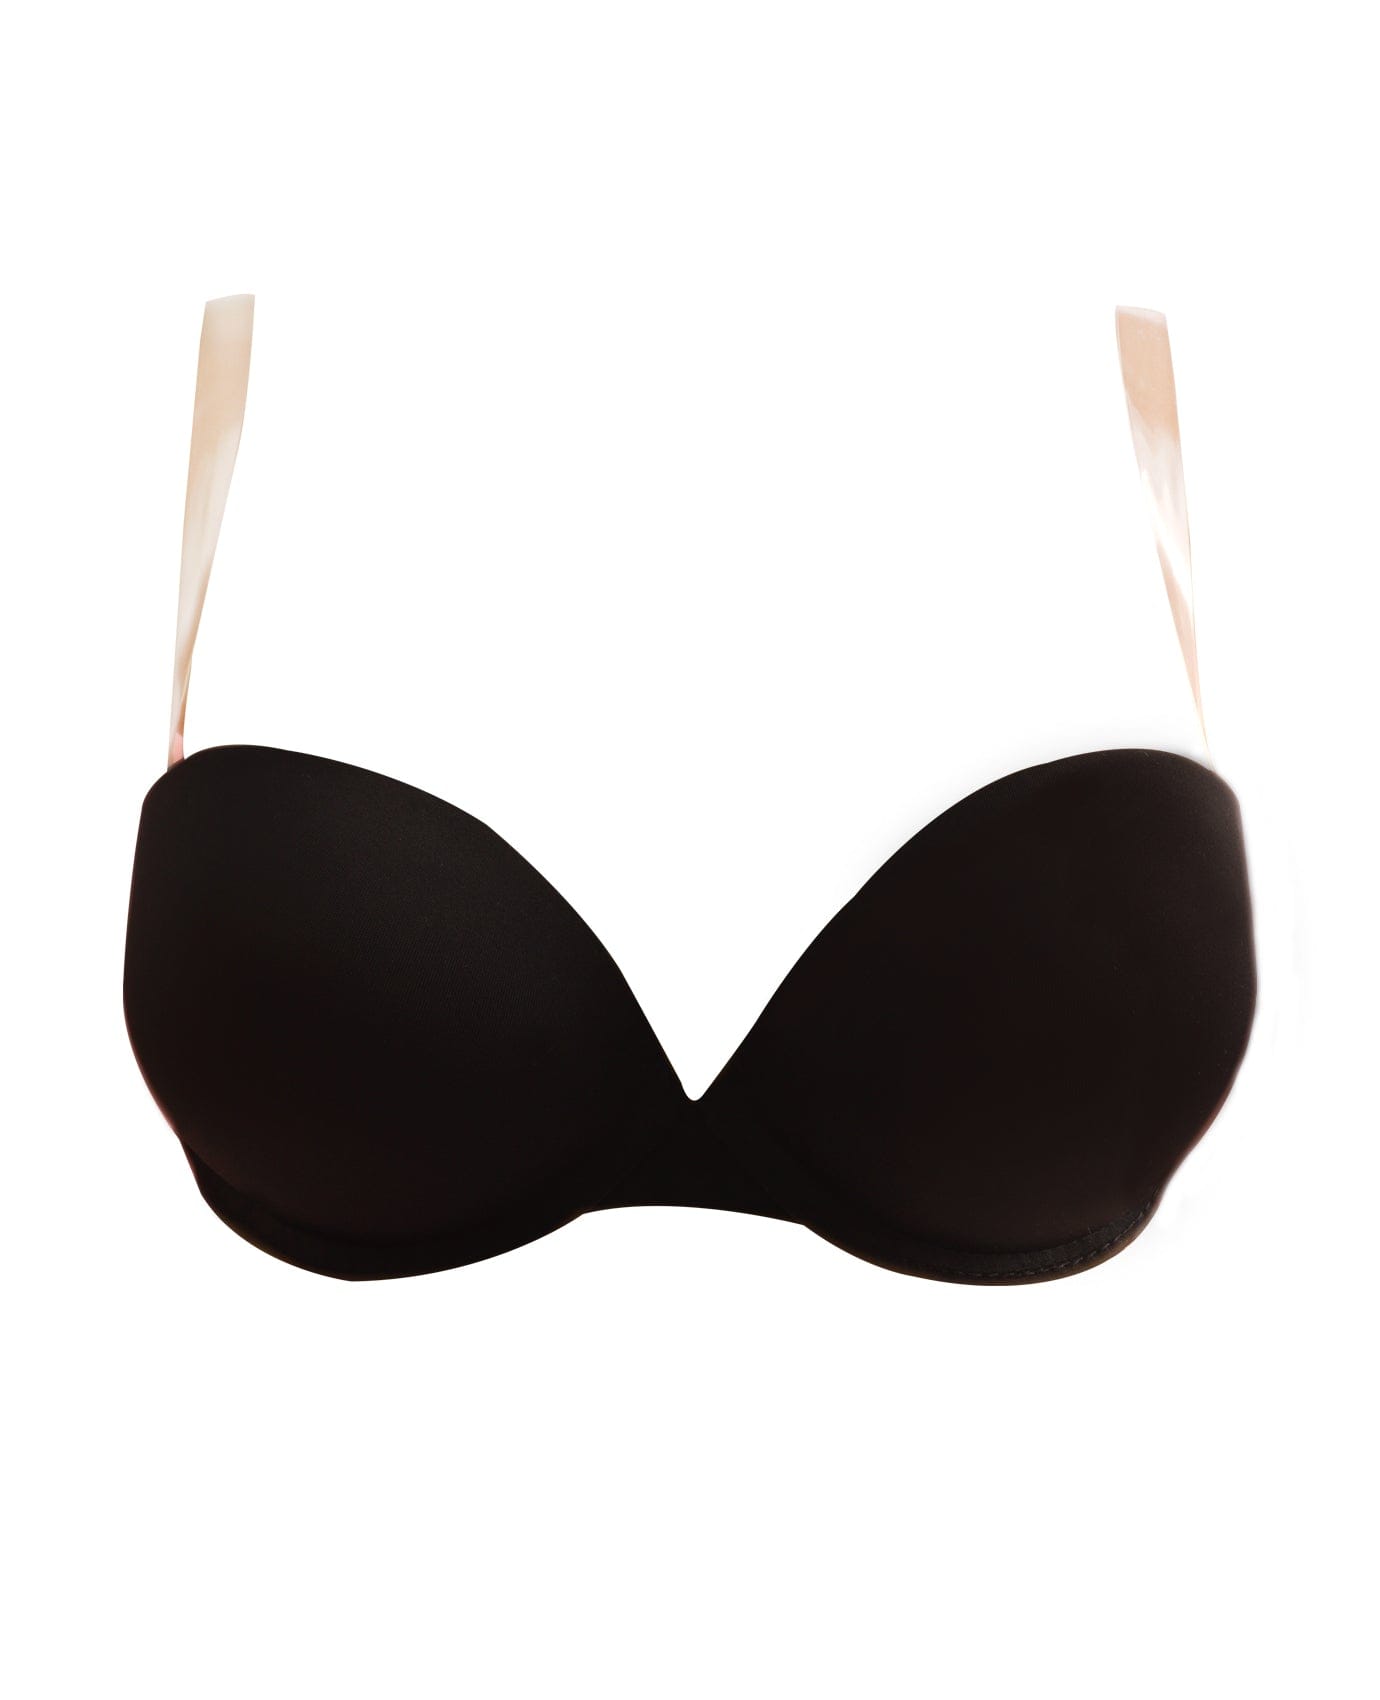 Buy online Black Transparent Straped Bra from lingerie for Women